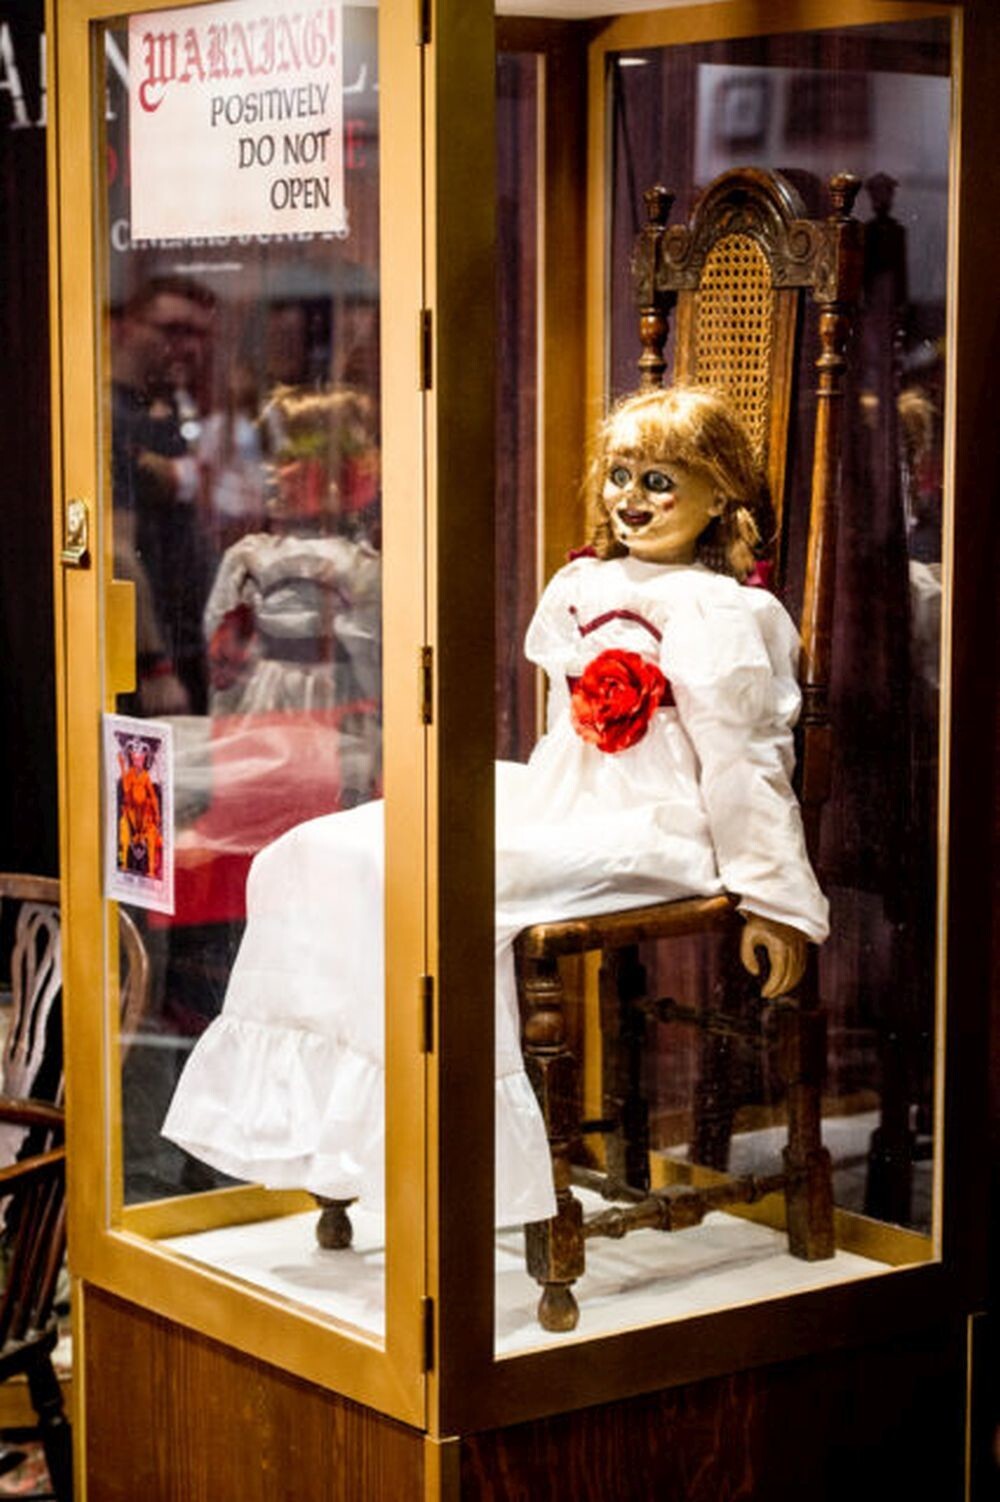 Аннабель: история зловещей куклы и ее голливудского успеха